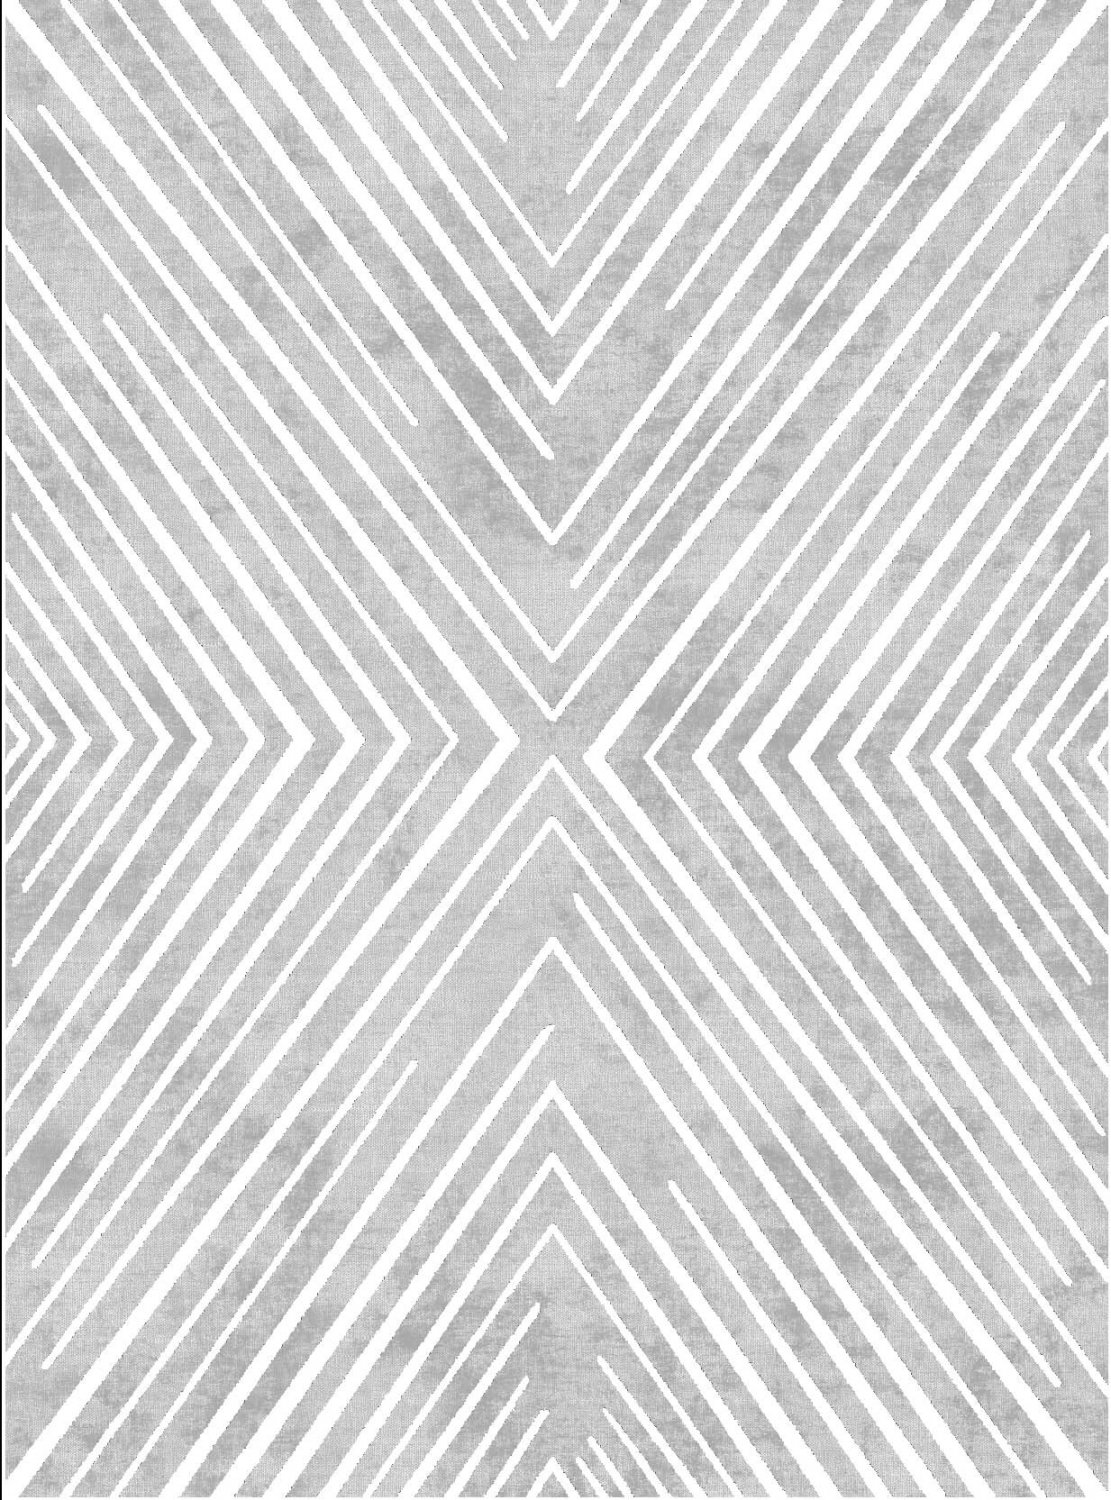 Wilton rug - Amorgos (grey)